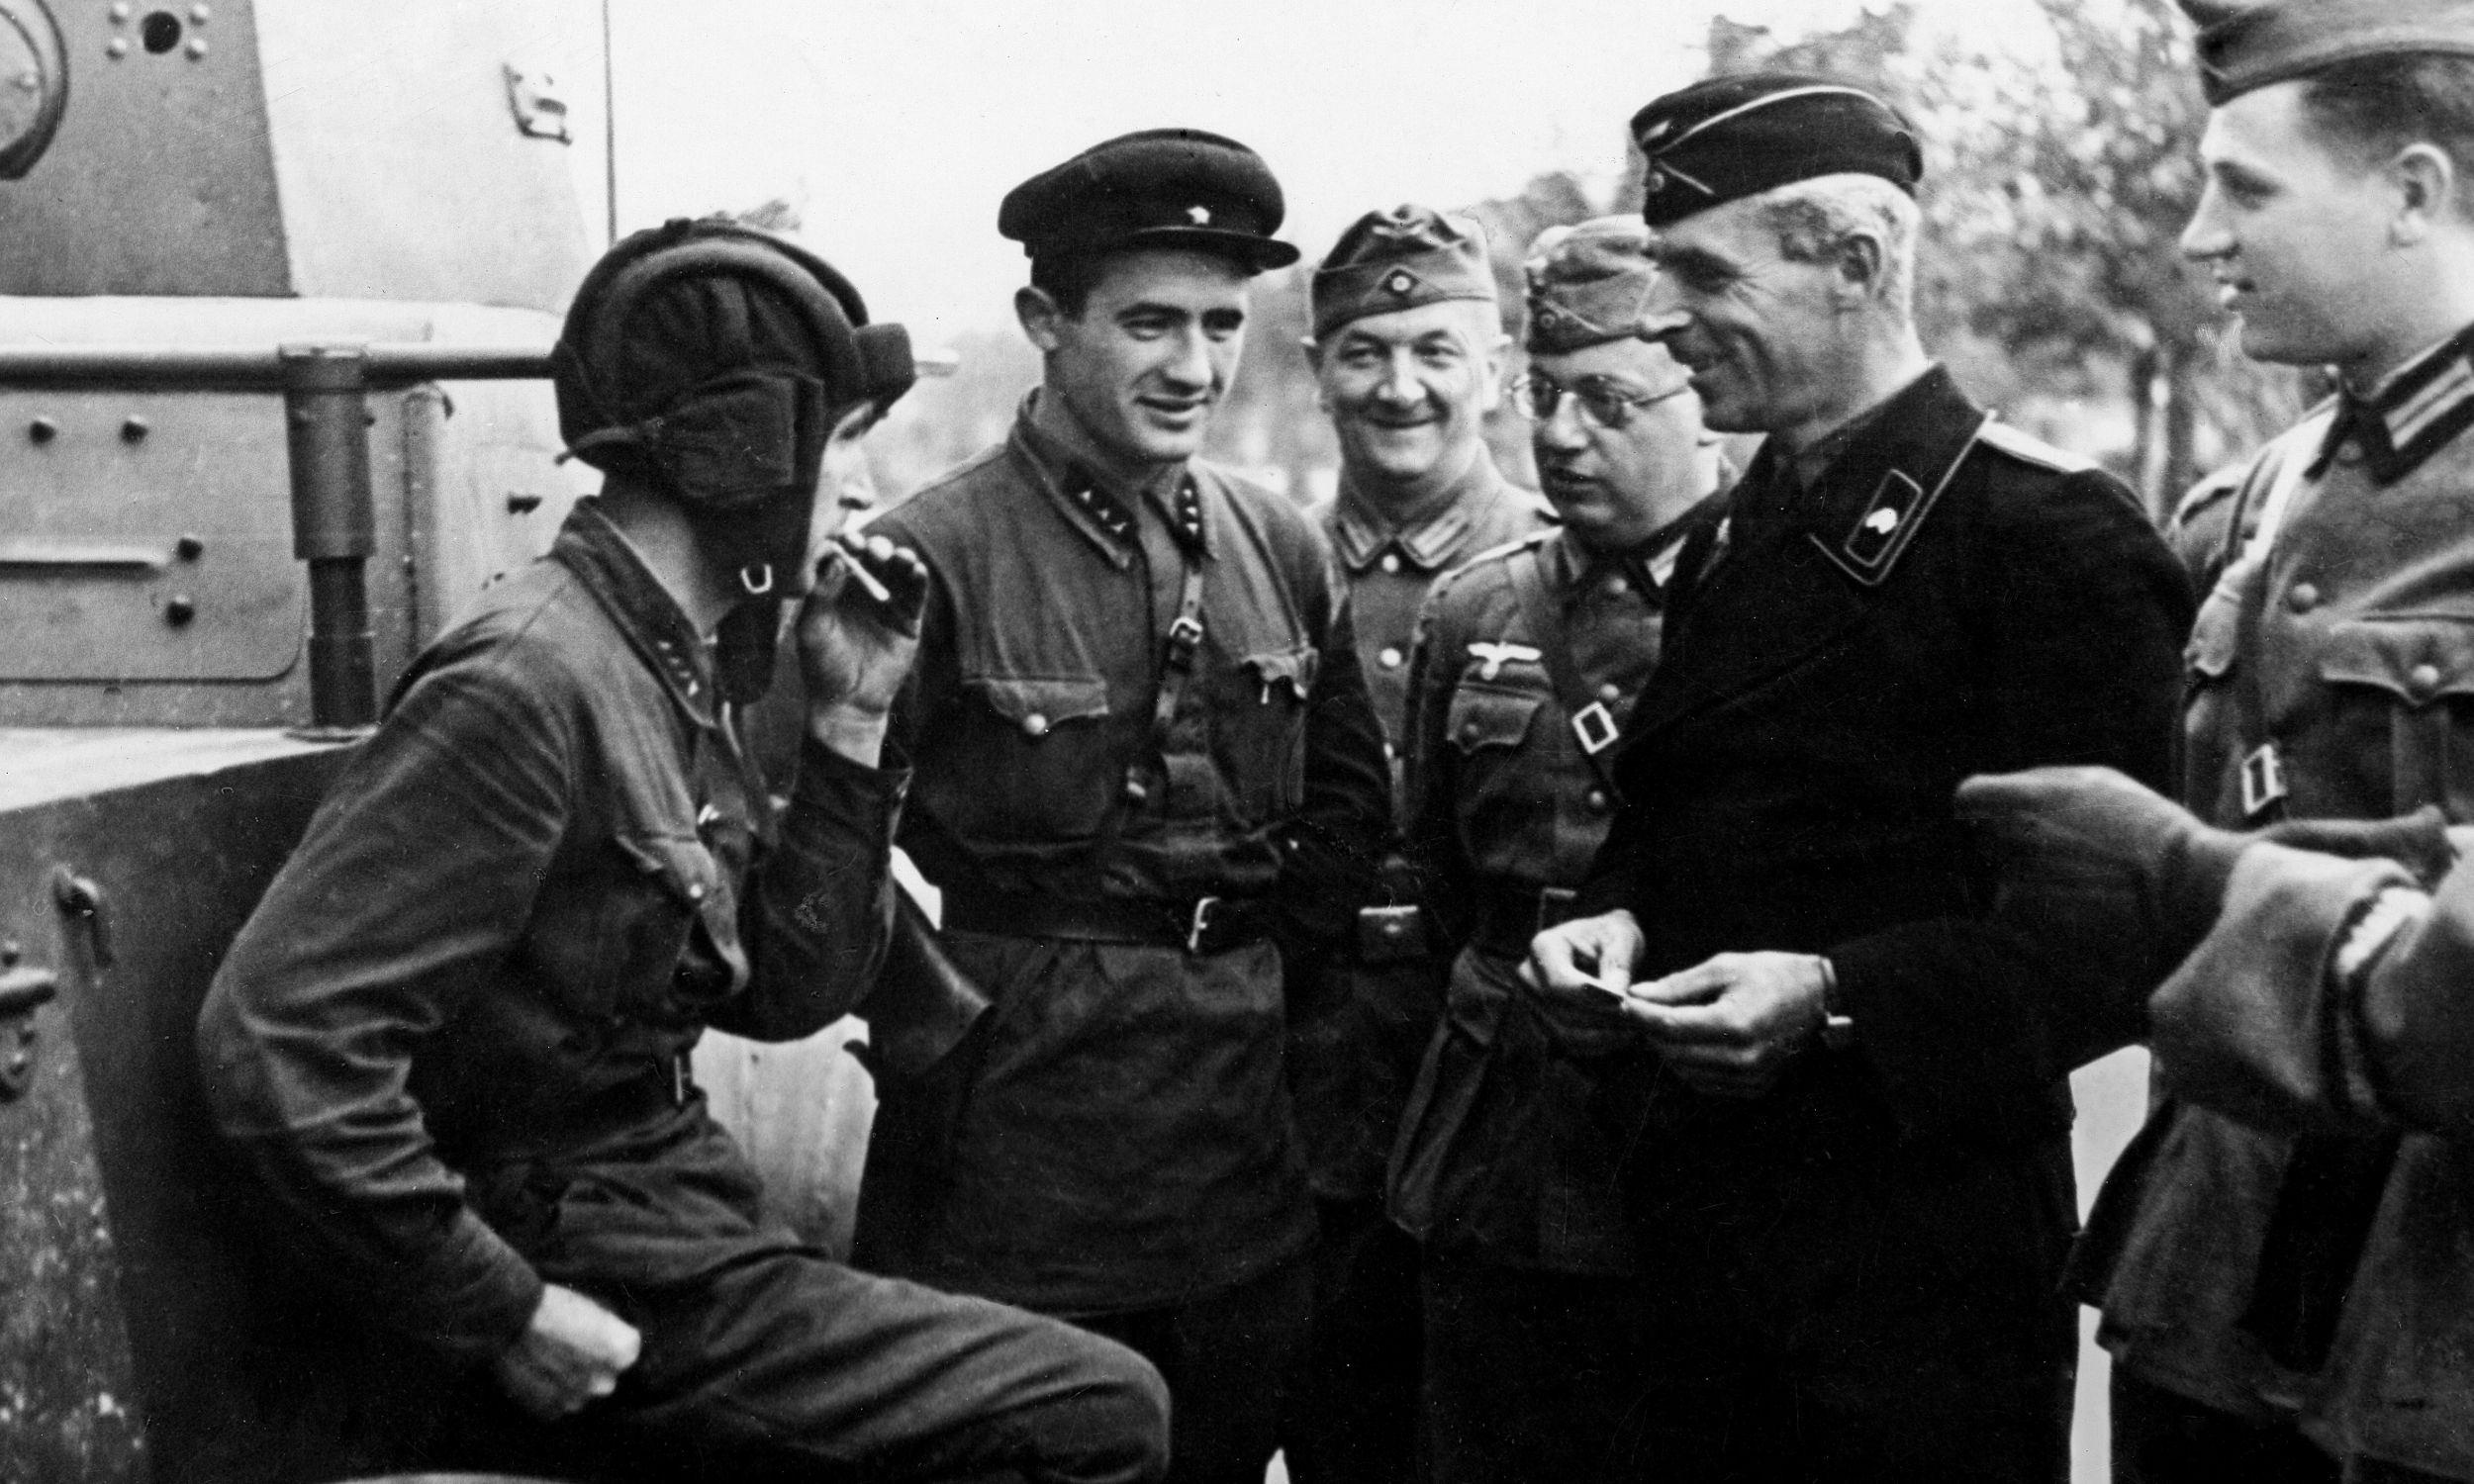 Wrzesień 1939 roku, po agresji ZSRR na Polskę. Niemieccy i radzieccy żołnierze rozmawiają w jednym z okupowanych  polskich miast. Fot. Ullstein Bild via Getty Images